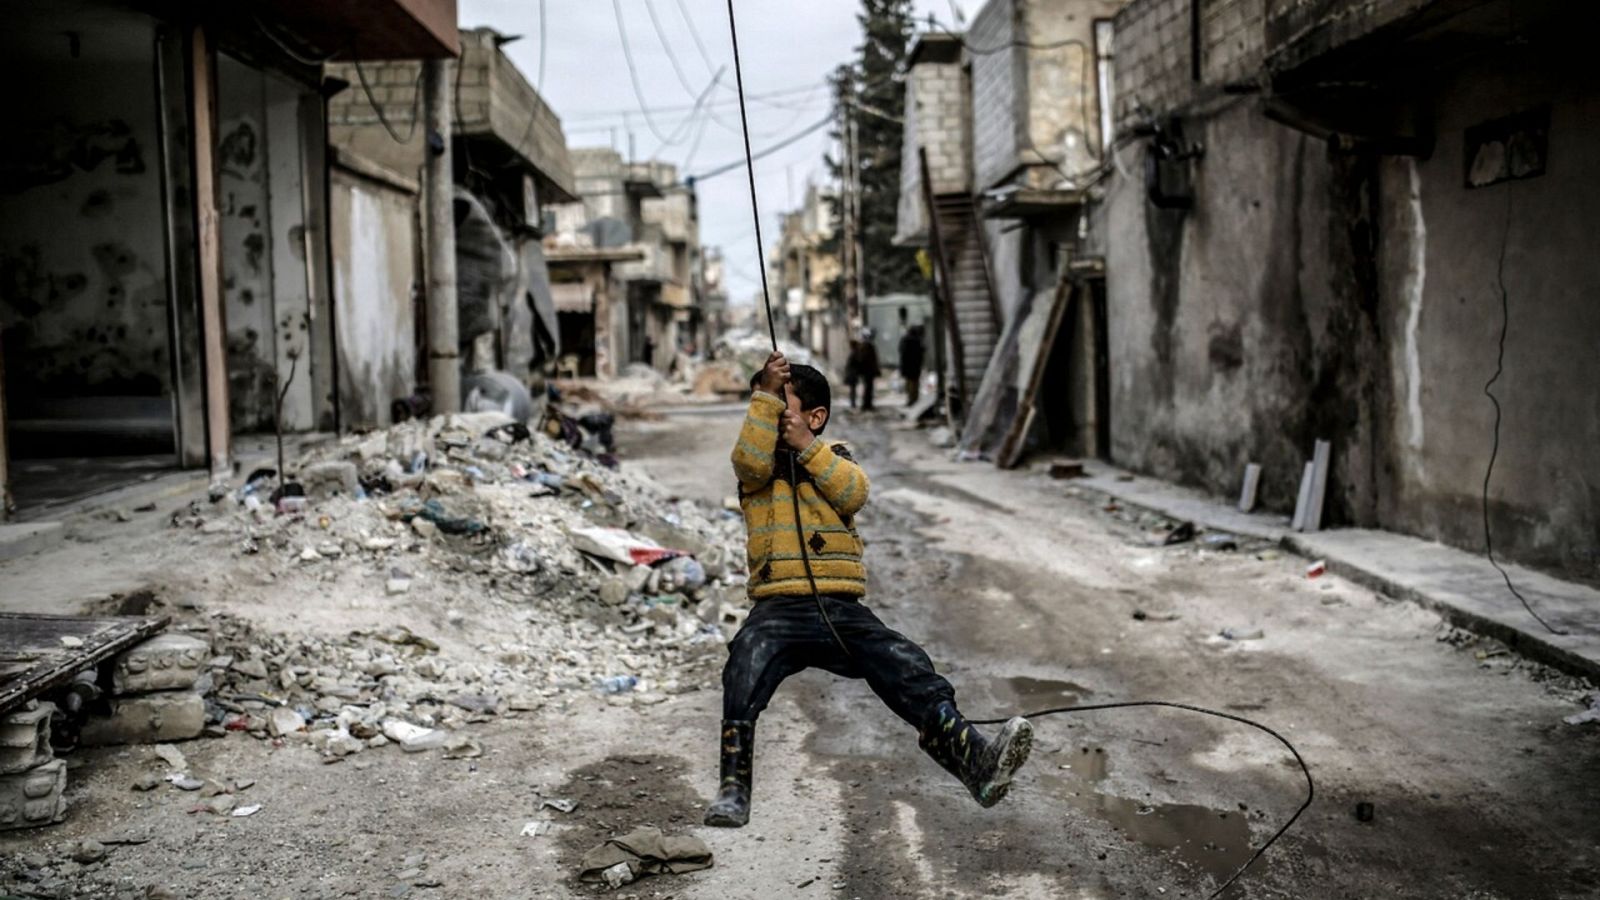 Imagen de archivo de un niño kurdo en la ciudad siria de Kobane/Ain al Arab. Foto: YASIN AKGUL / AFP